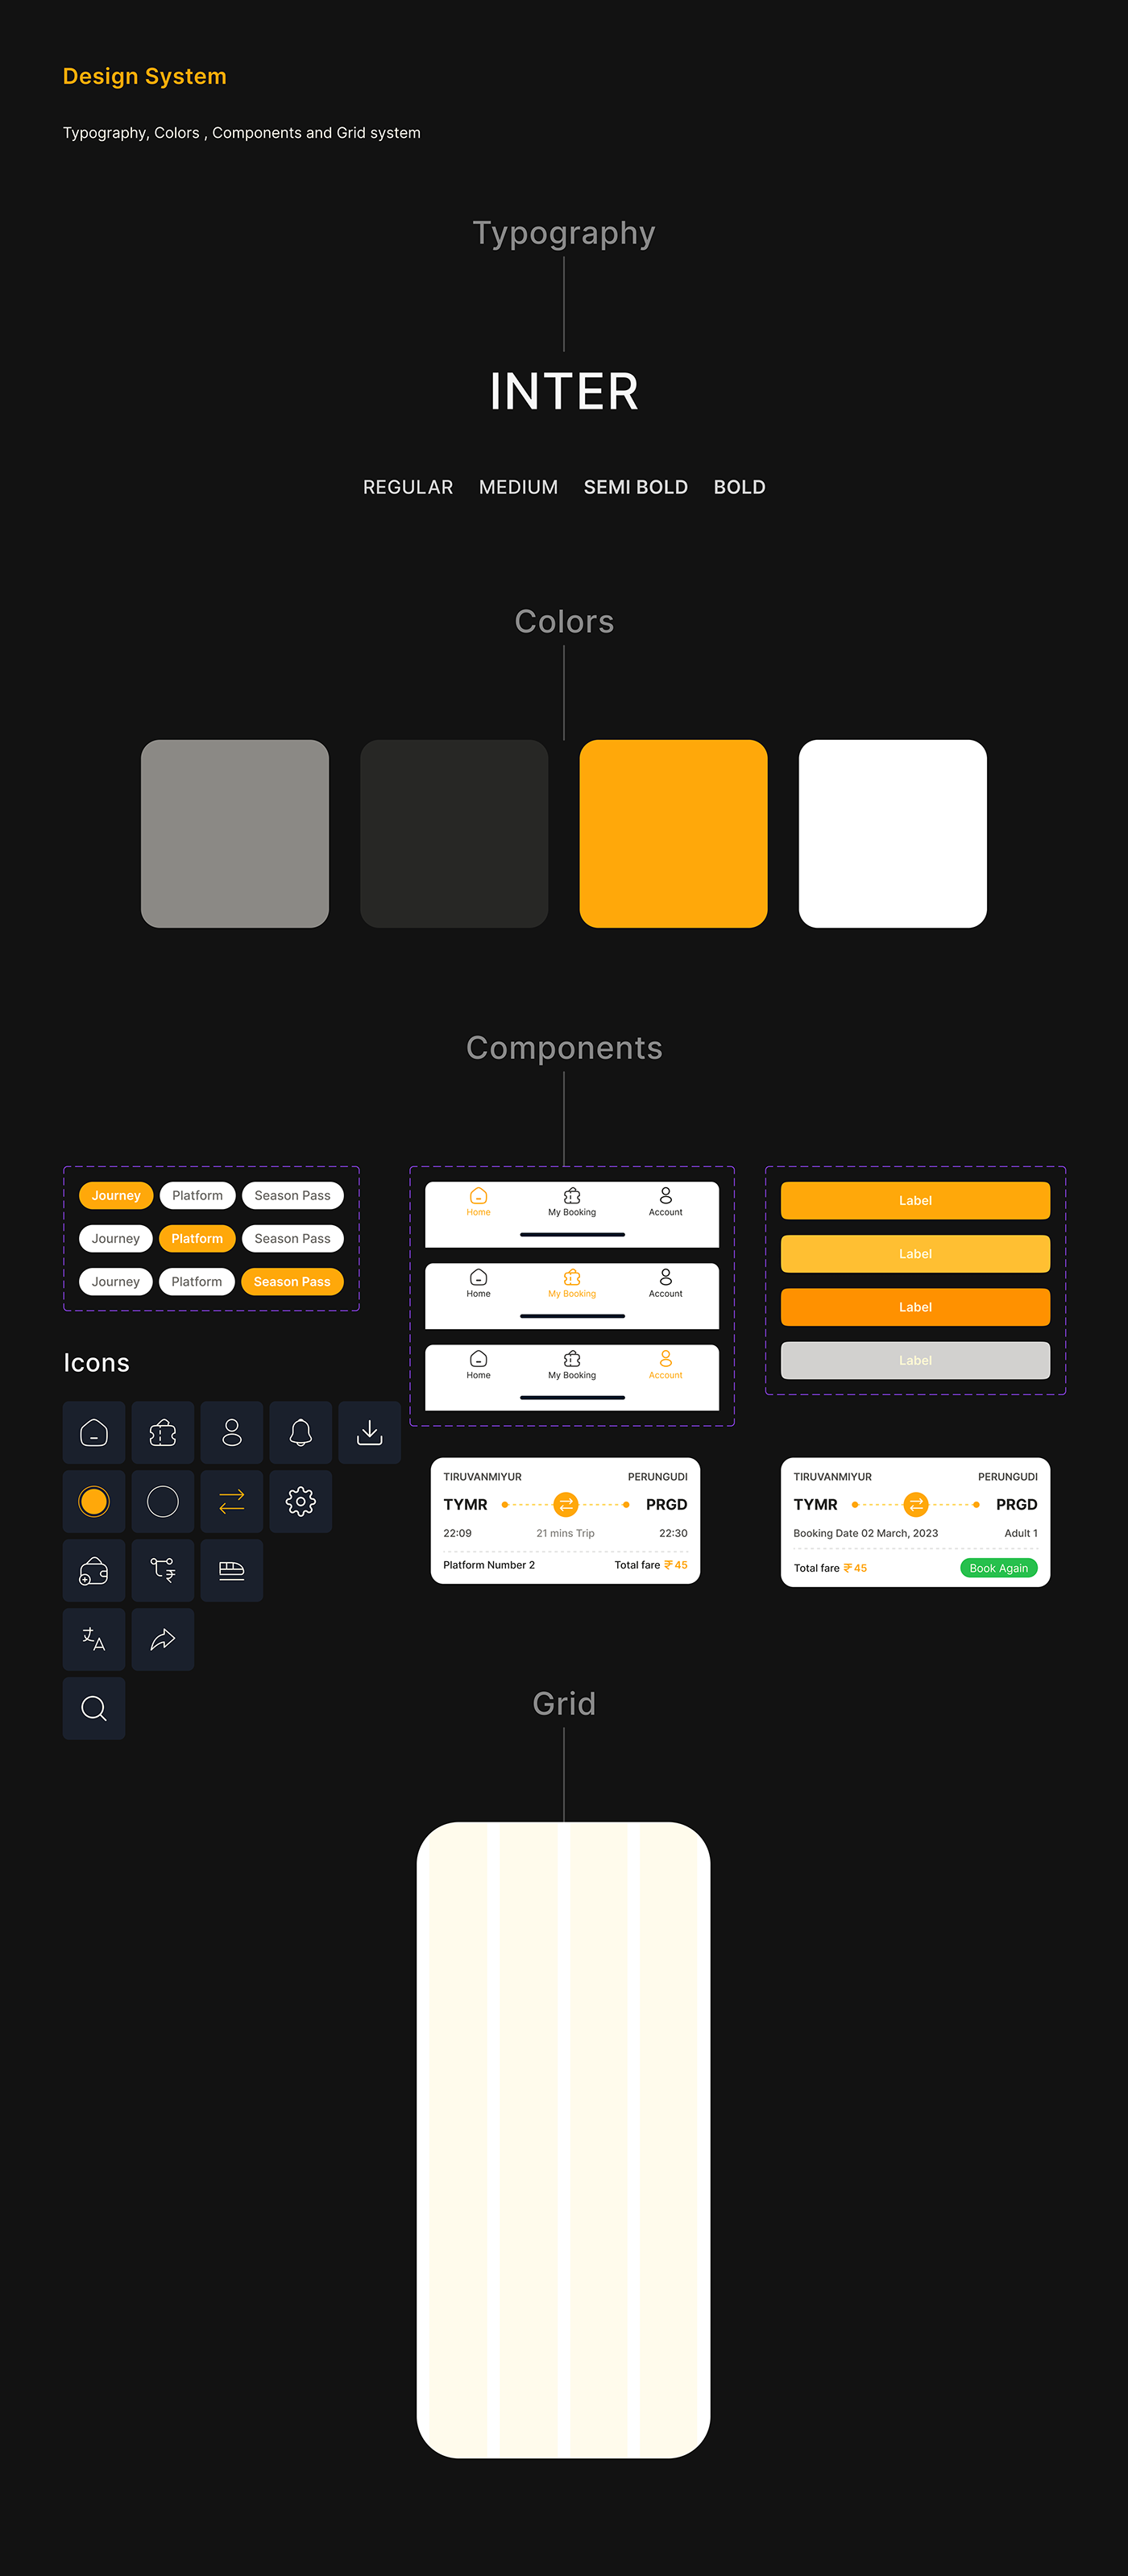 uxui Figma ui design user interface Mobile app Case Study app design user experience